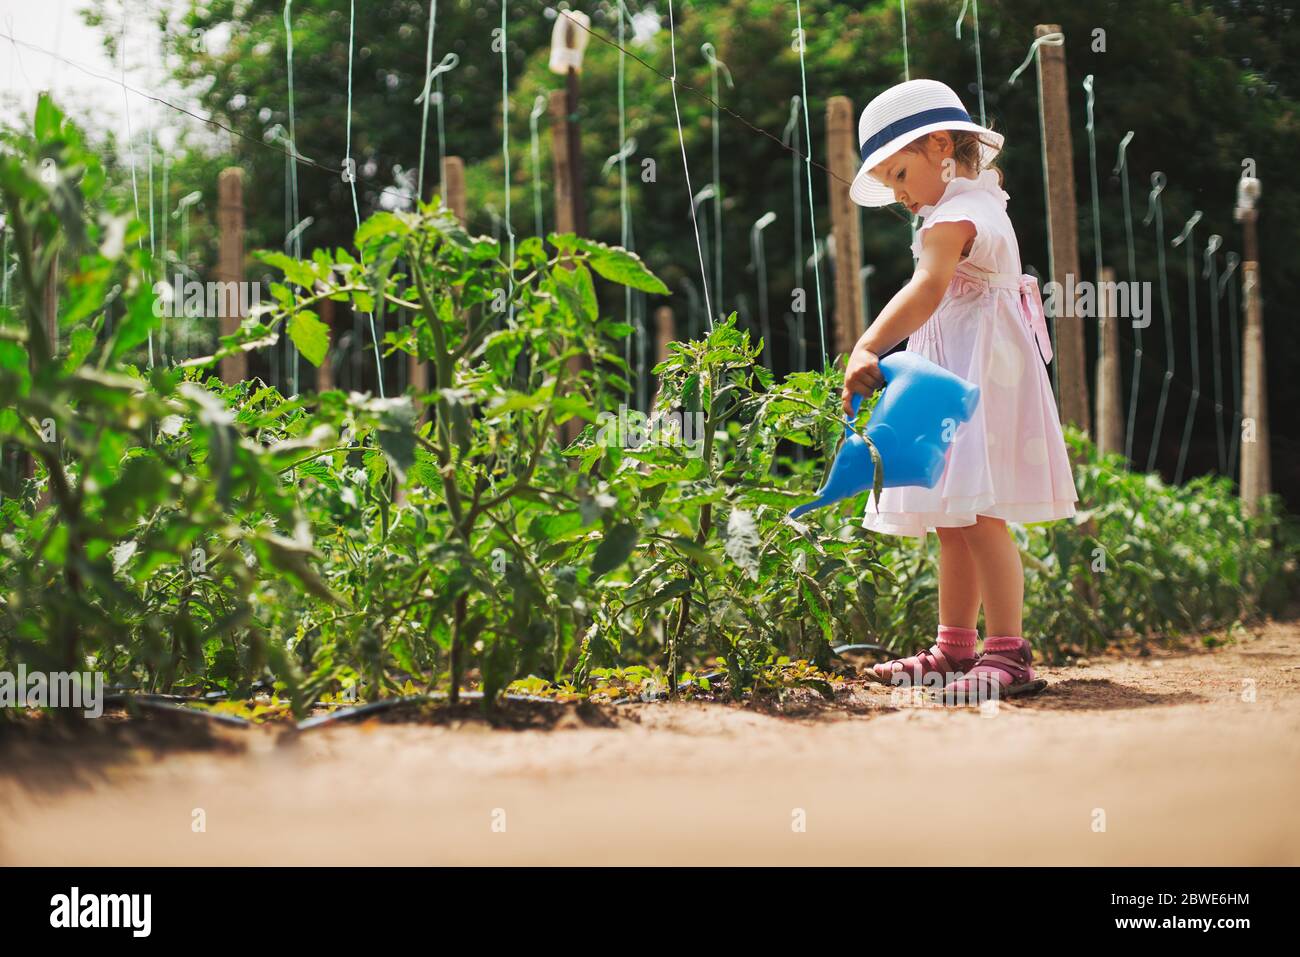 Llittle girl gardener watering  tomatoes in green garden. Horticulture. Stock Photo